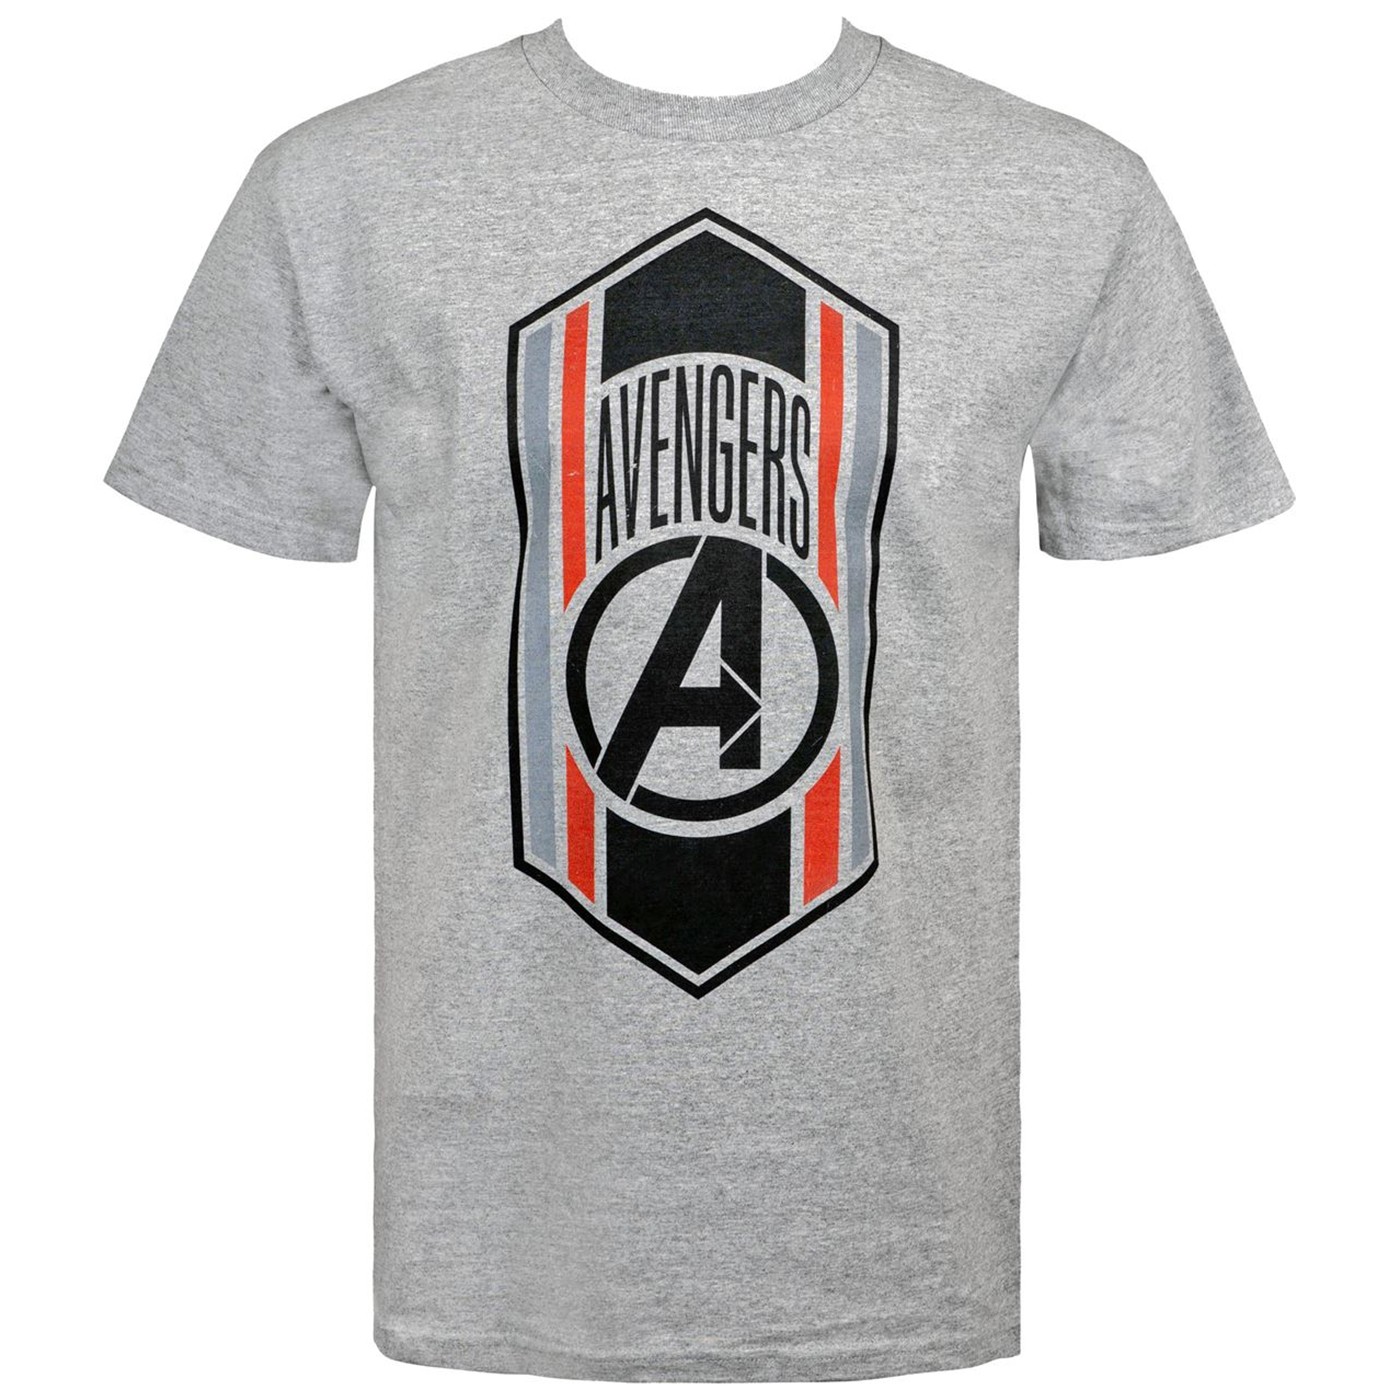 Avengers Endgame Quantum Armor Badge Men's T-Shirt